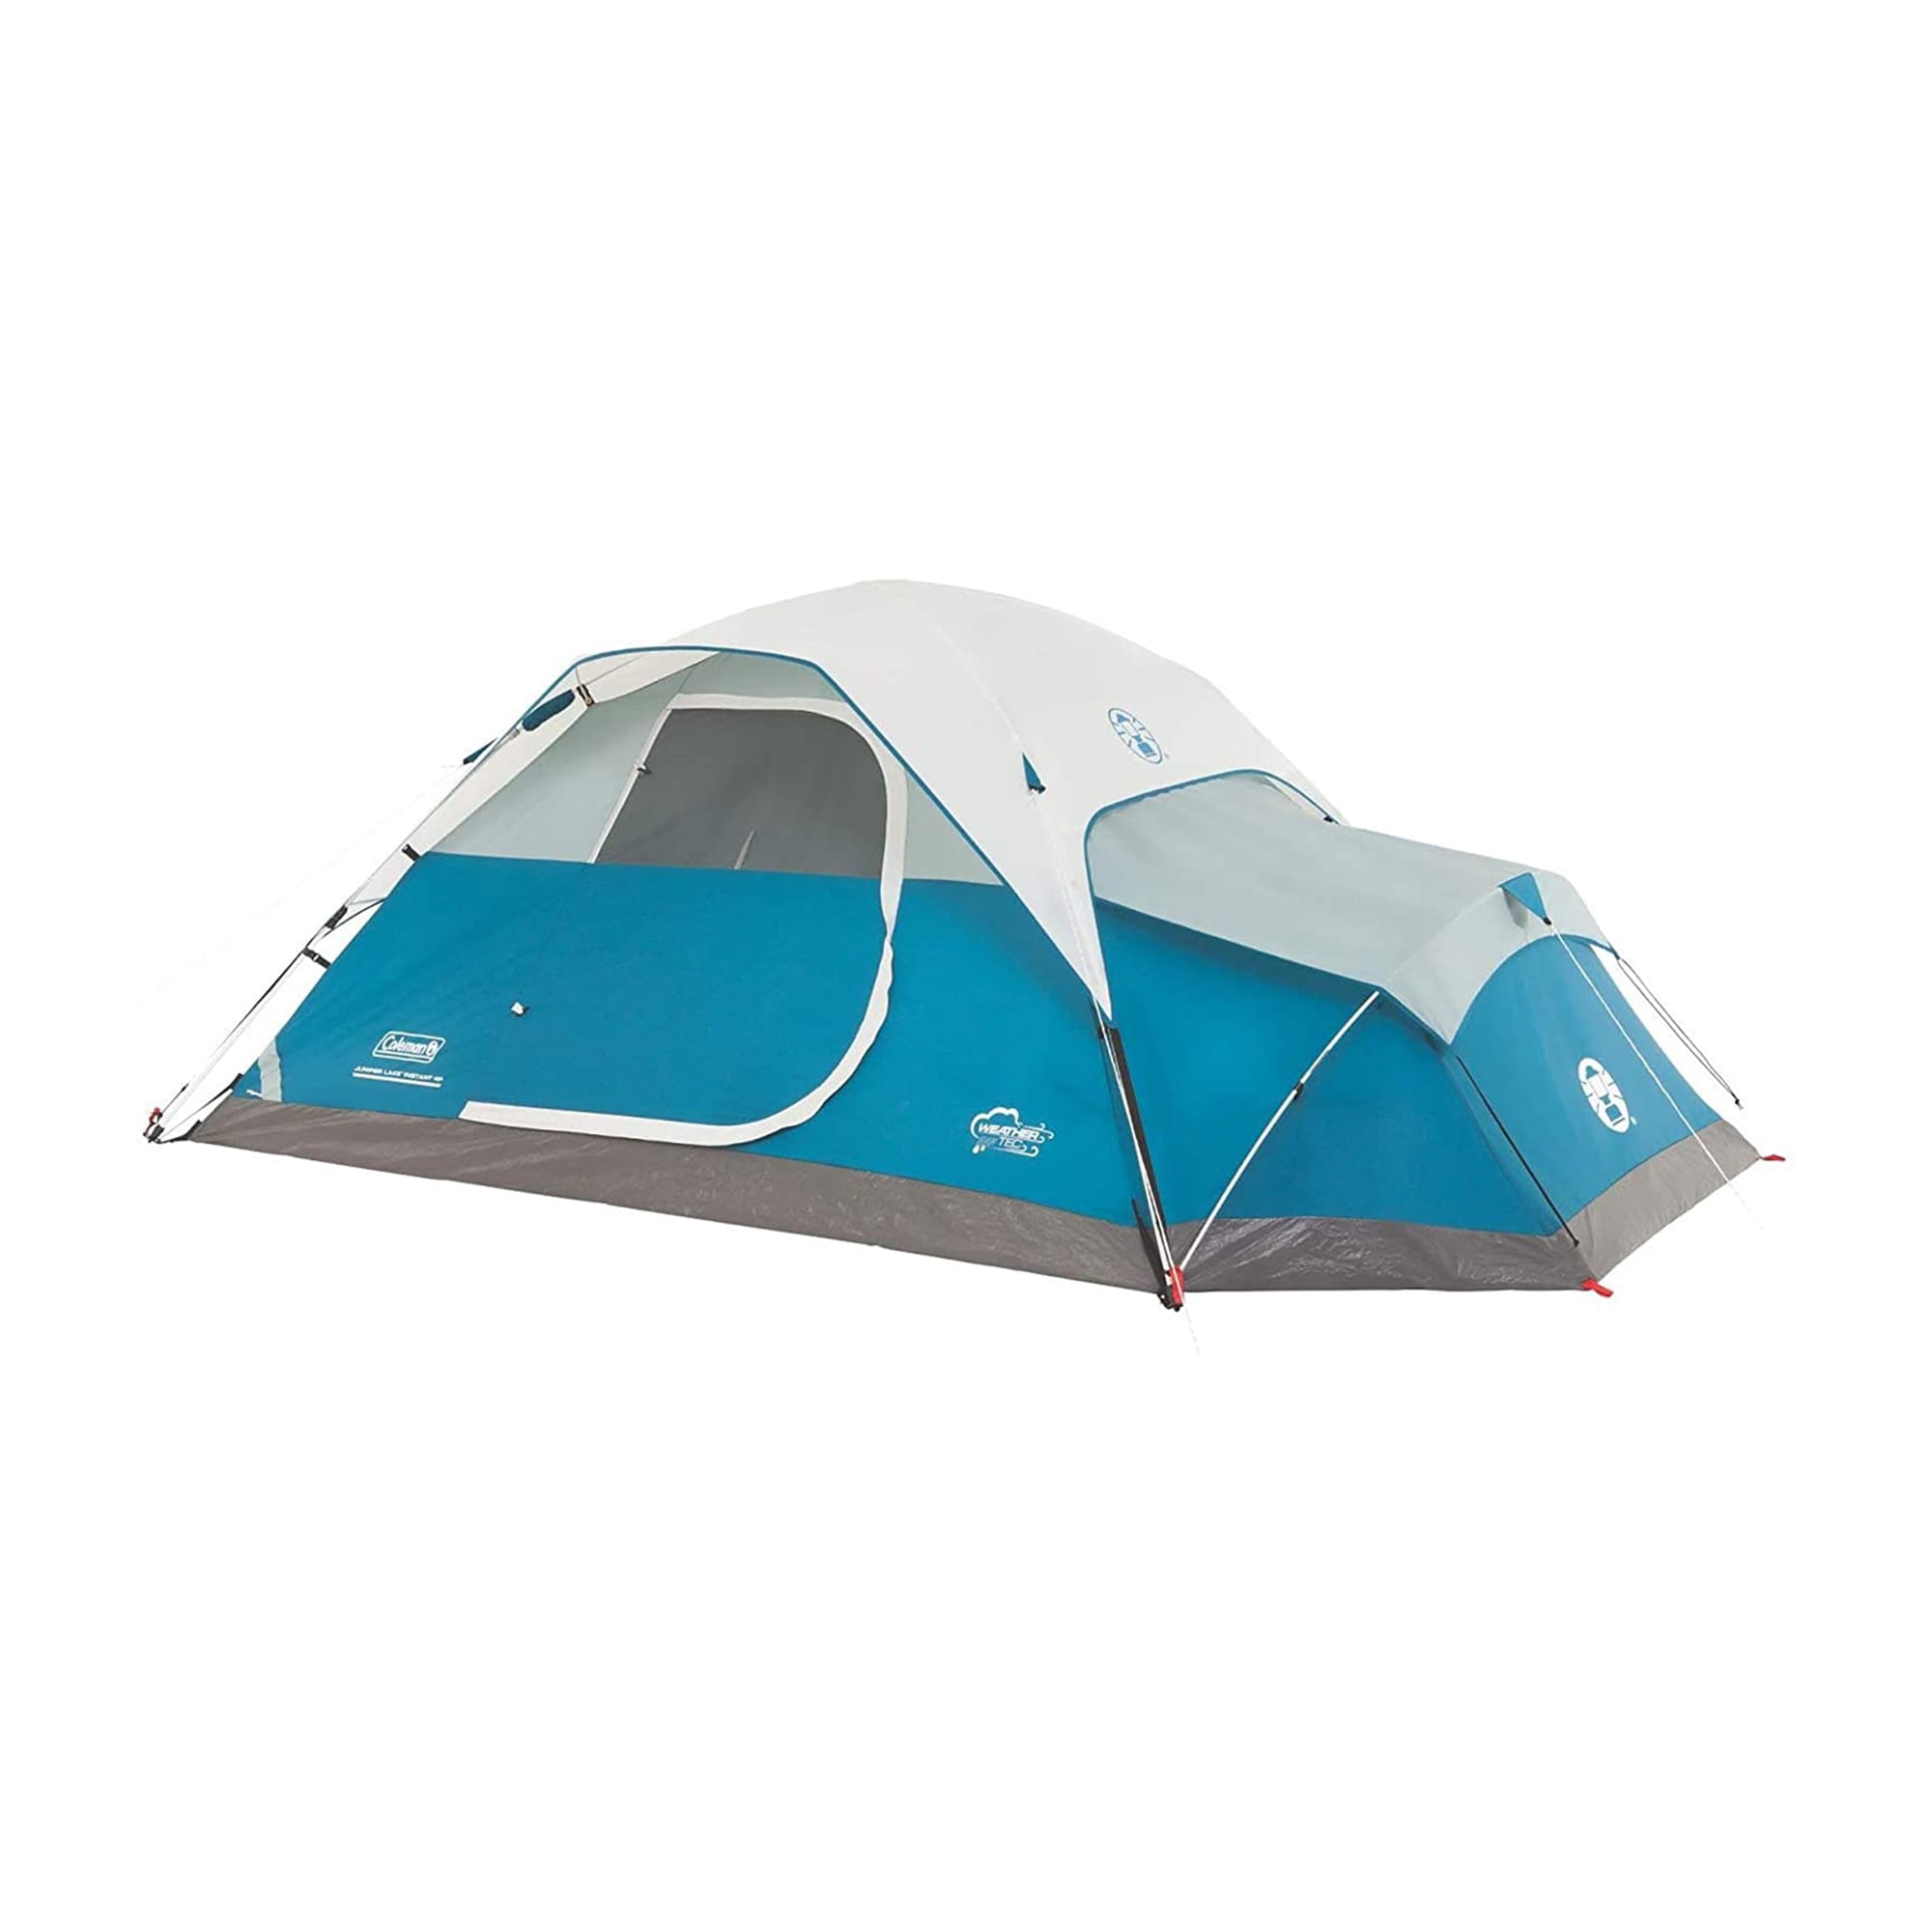 Juniper Lake 4 Person Instant Dome Tent with Annex Walmart.com